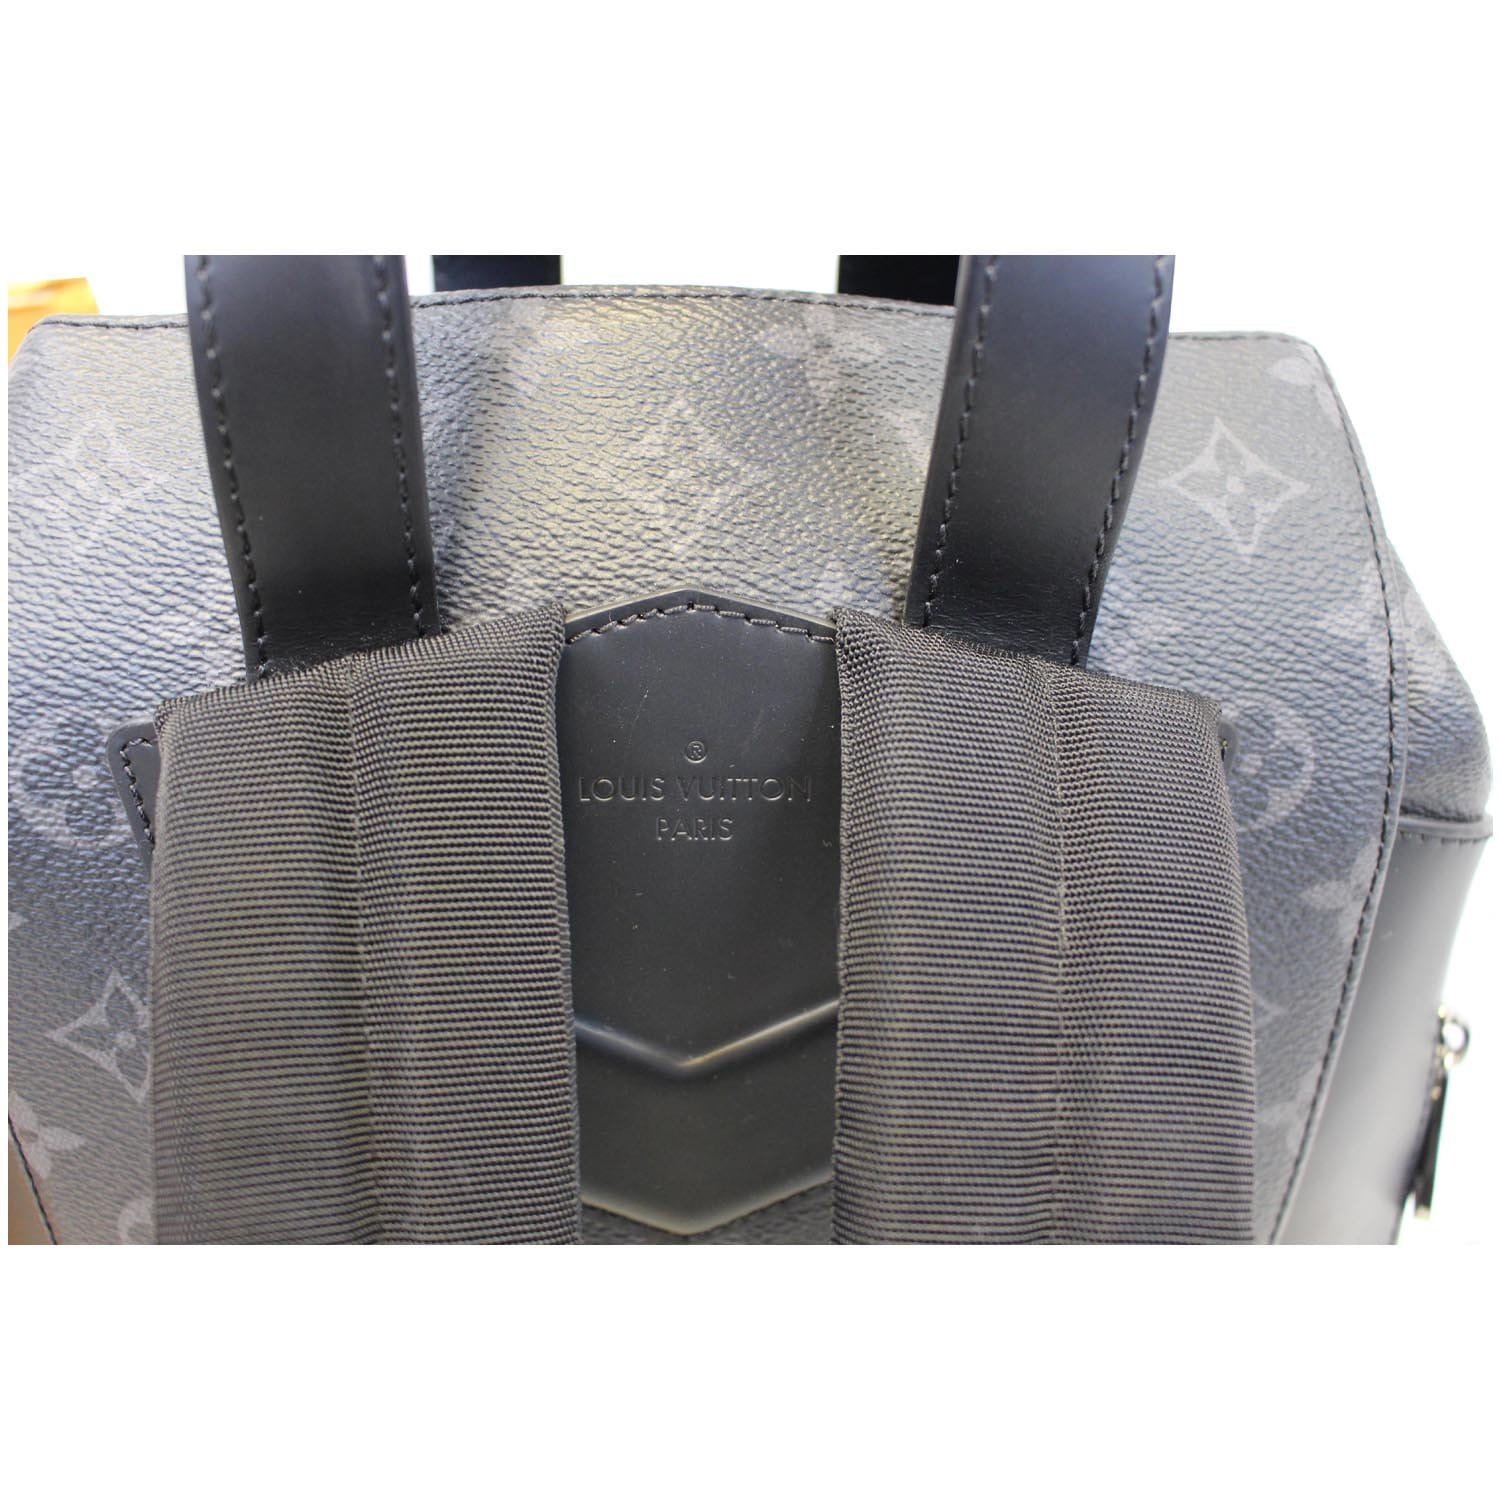 Louis Vuitton Explorer Backpack Monogram Eclipse Black/Gray - US